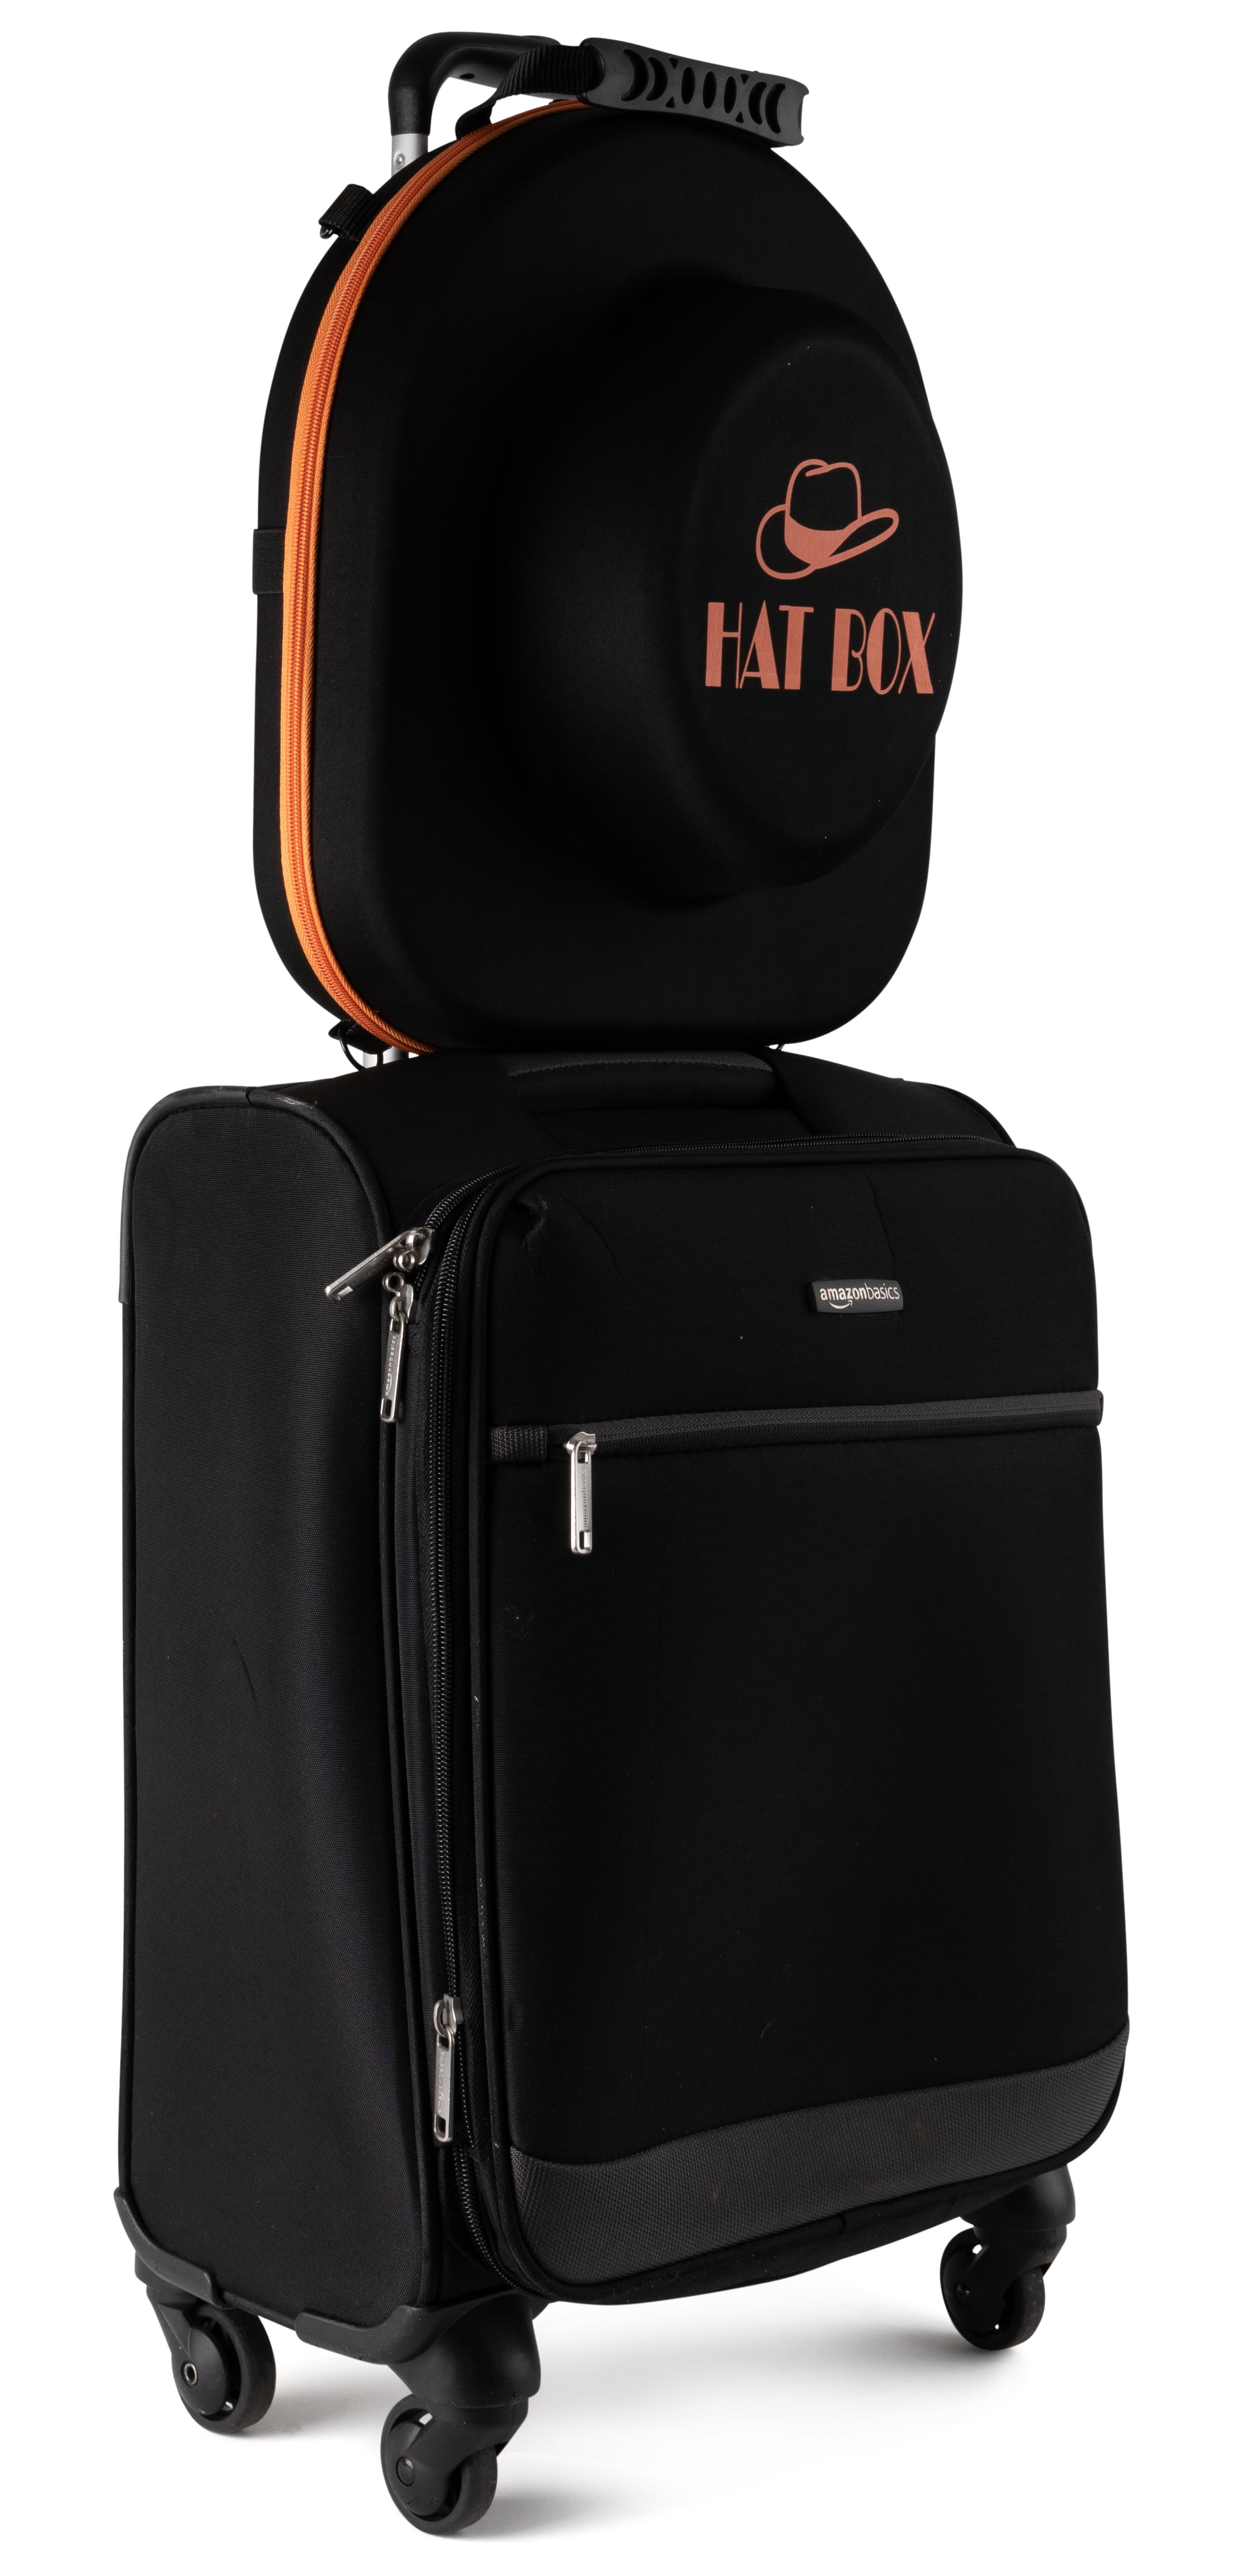 Hat Box 30 - Luxury Hardsided Luggage - Travel, Women M23626